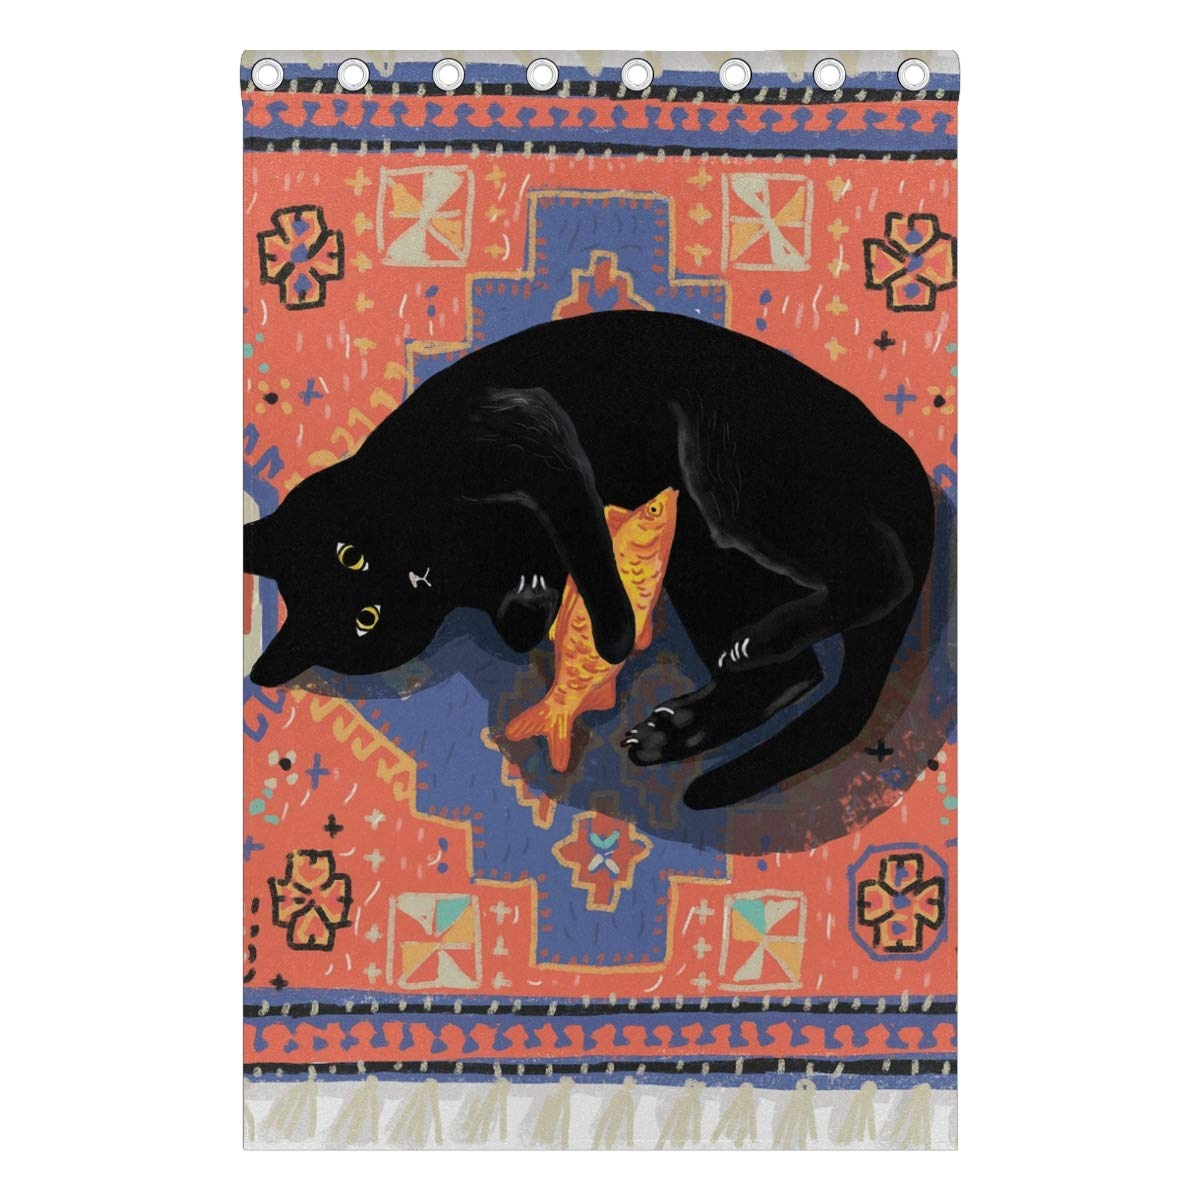 Mnsruu Fenstervorhänge mit geometrischem Muster und schwarzer Katze auf Tribal-Hintergrund, für Schlafzimmer, Wohnzimmer, 140 x 214 cm, 2 Paneele mit Ösen